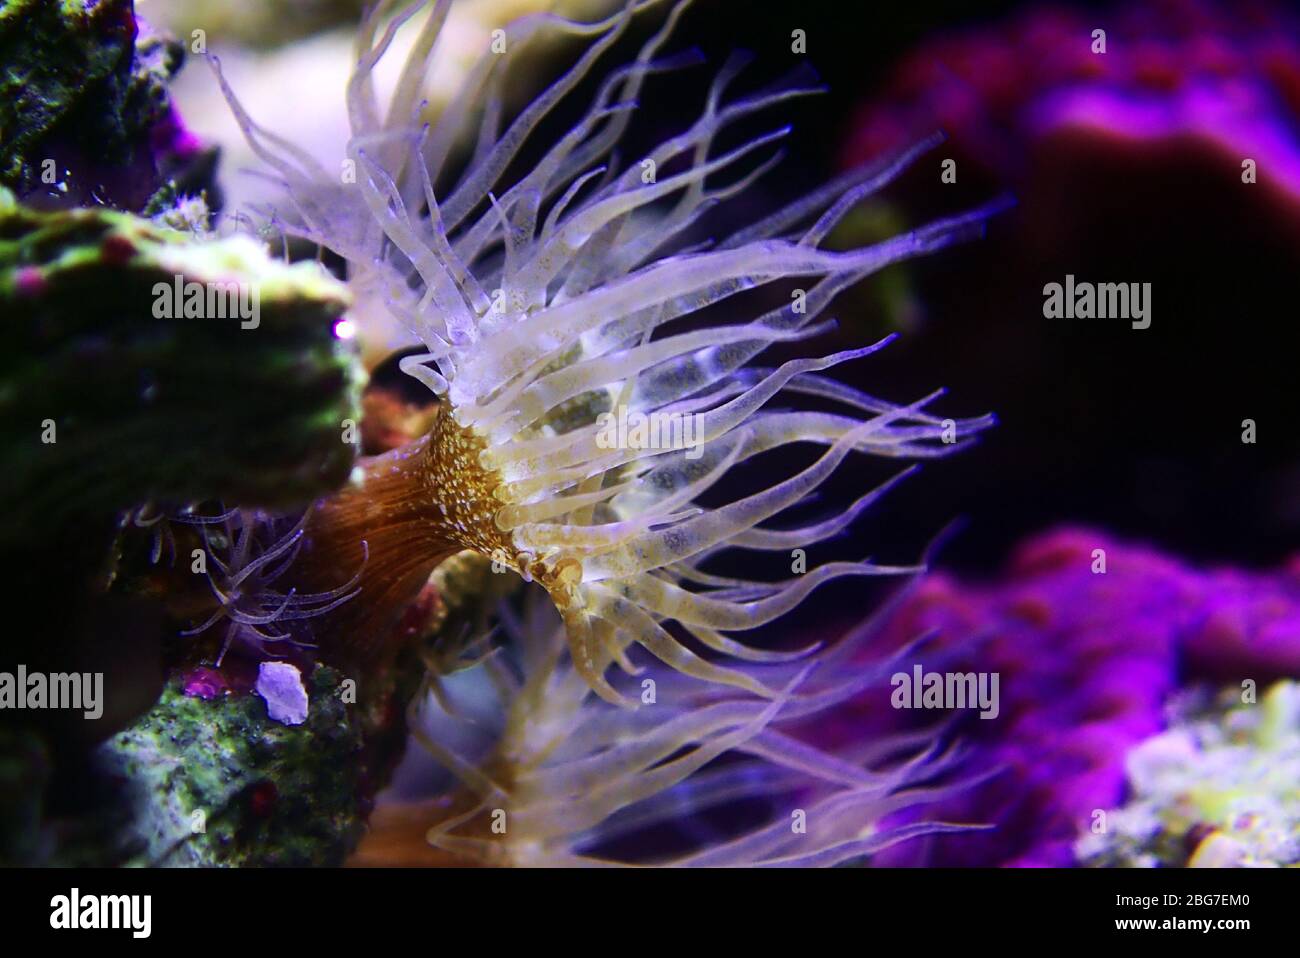 Small glass anemone pest - Exaiptasia or Aiptasia Pallida Stock Photo